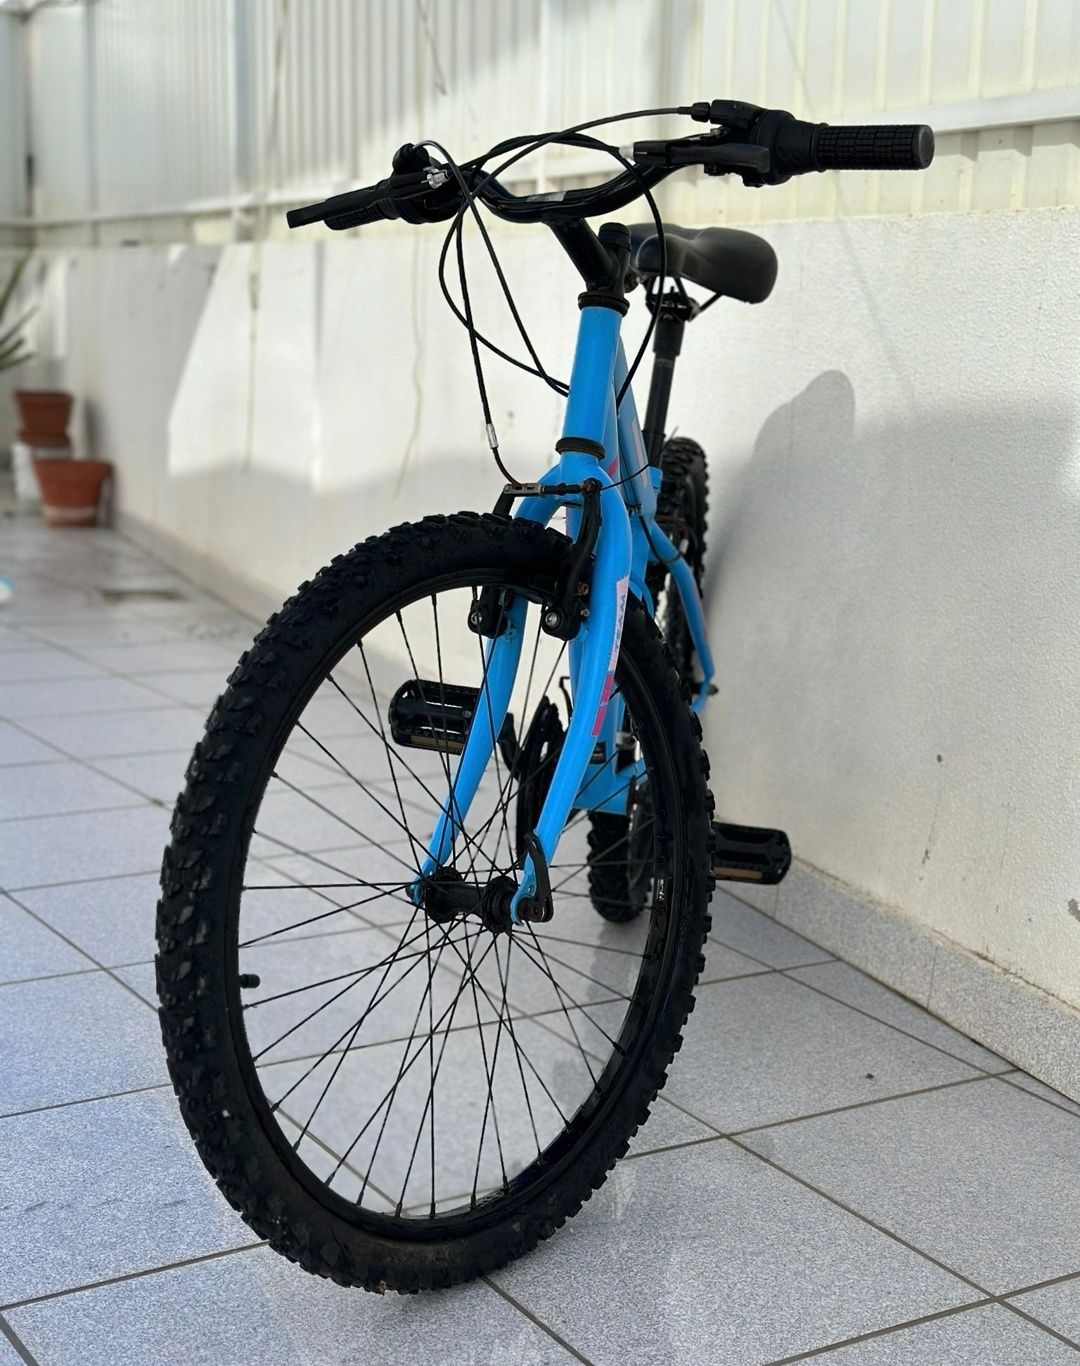 Bicicleta aro 16